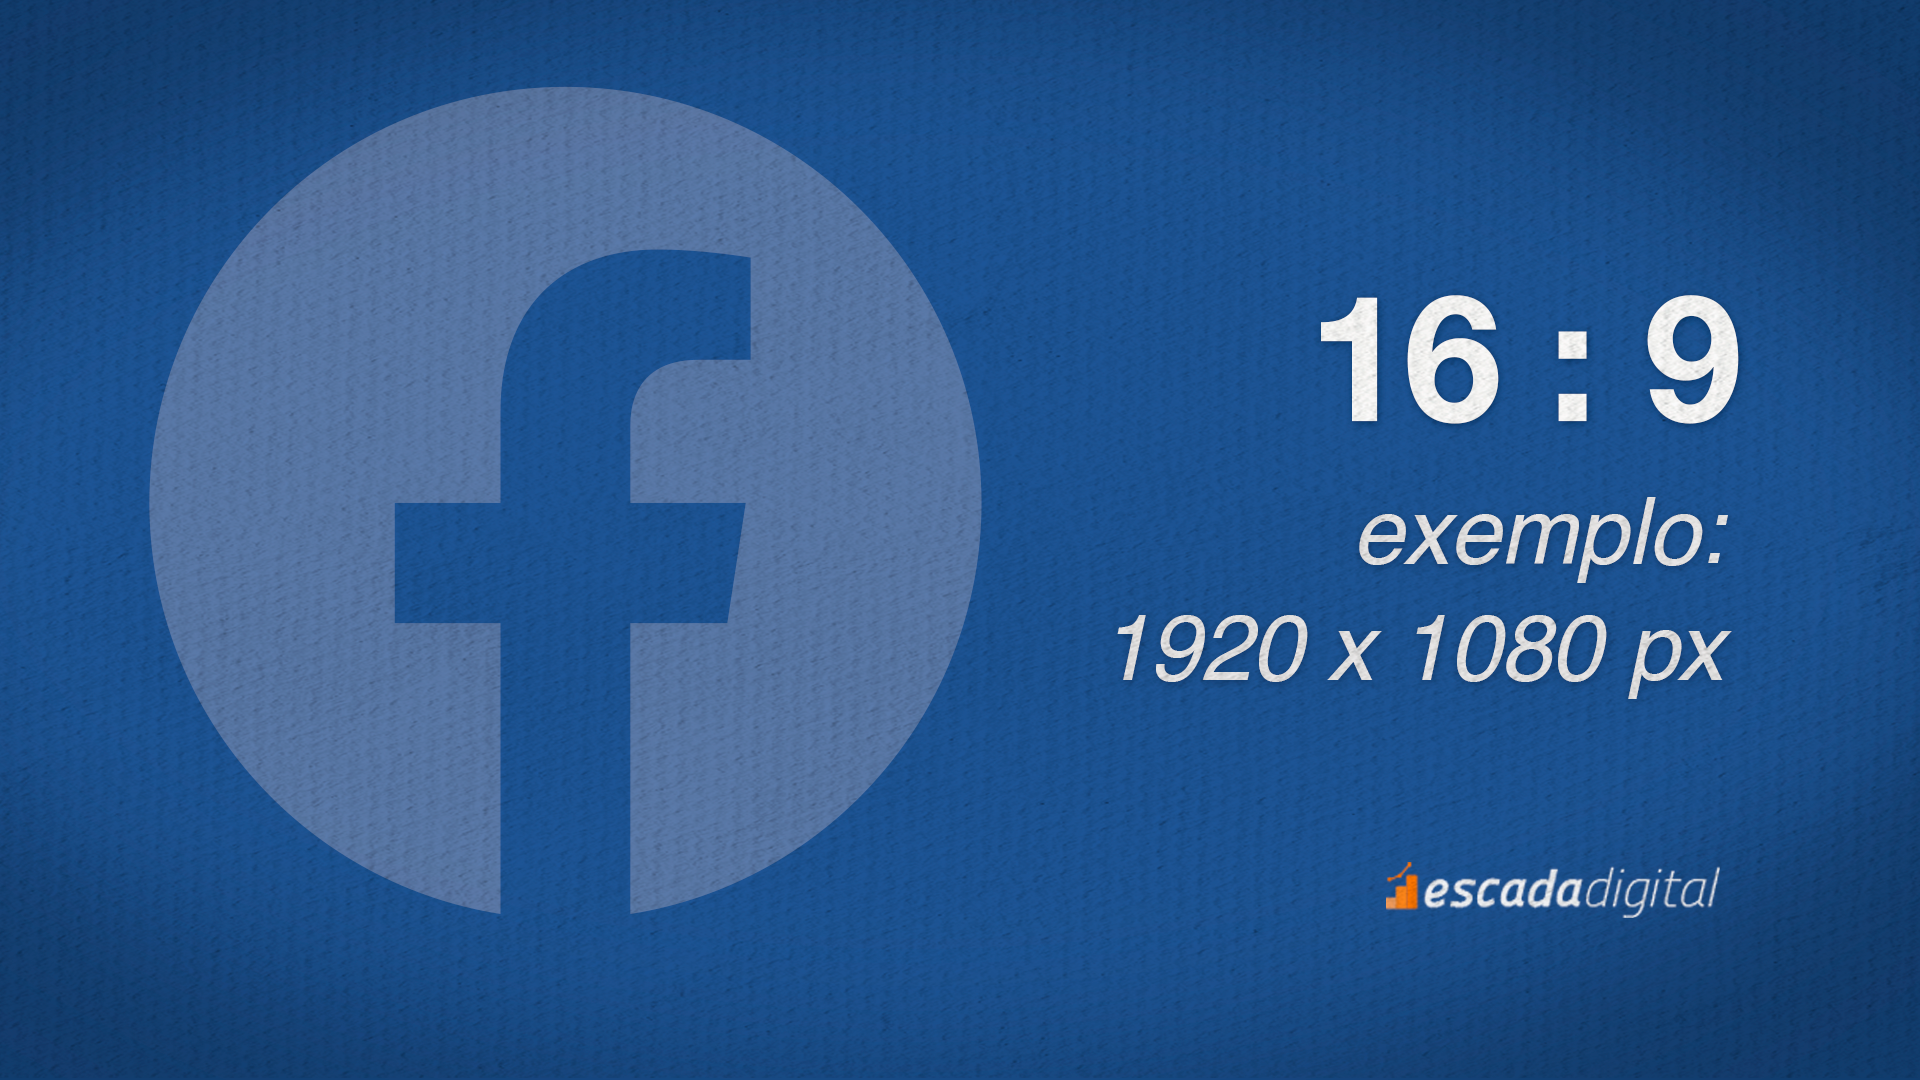 Formato de vídeo do Facebook para o Feed. 16 por 9 de proporção. Um exemplo de imagem com esse tamanho seria: 1920 x 1080 px